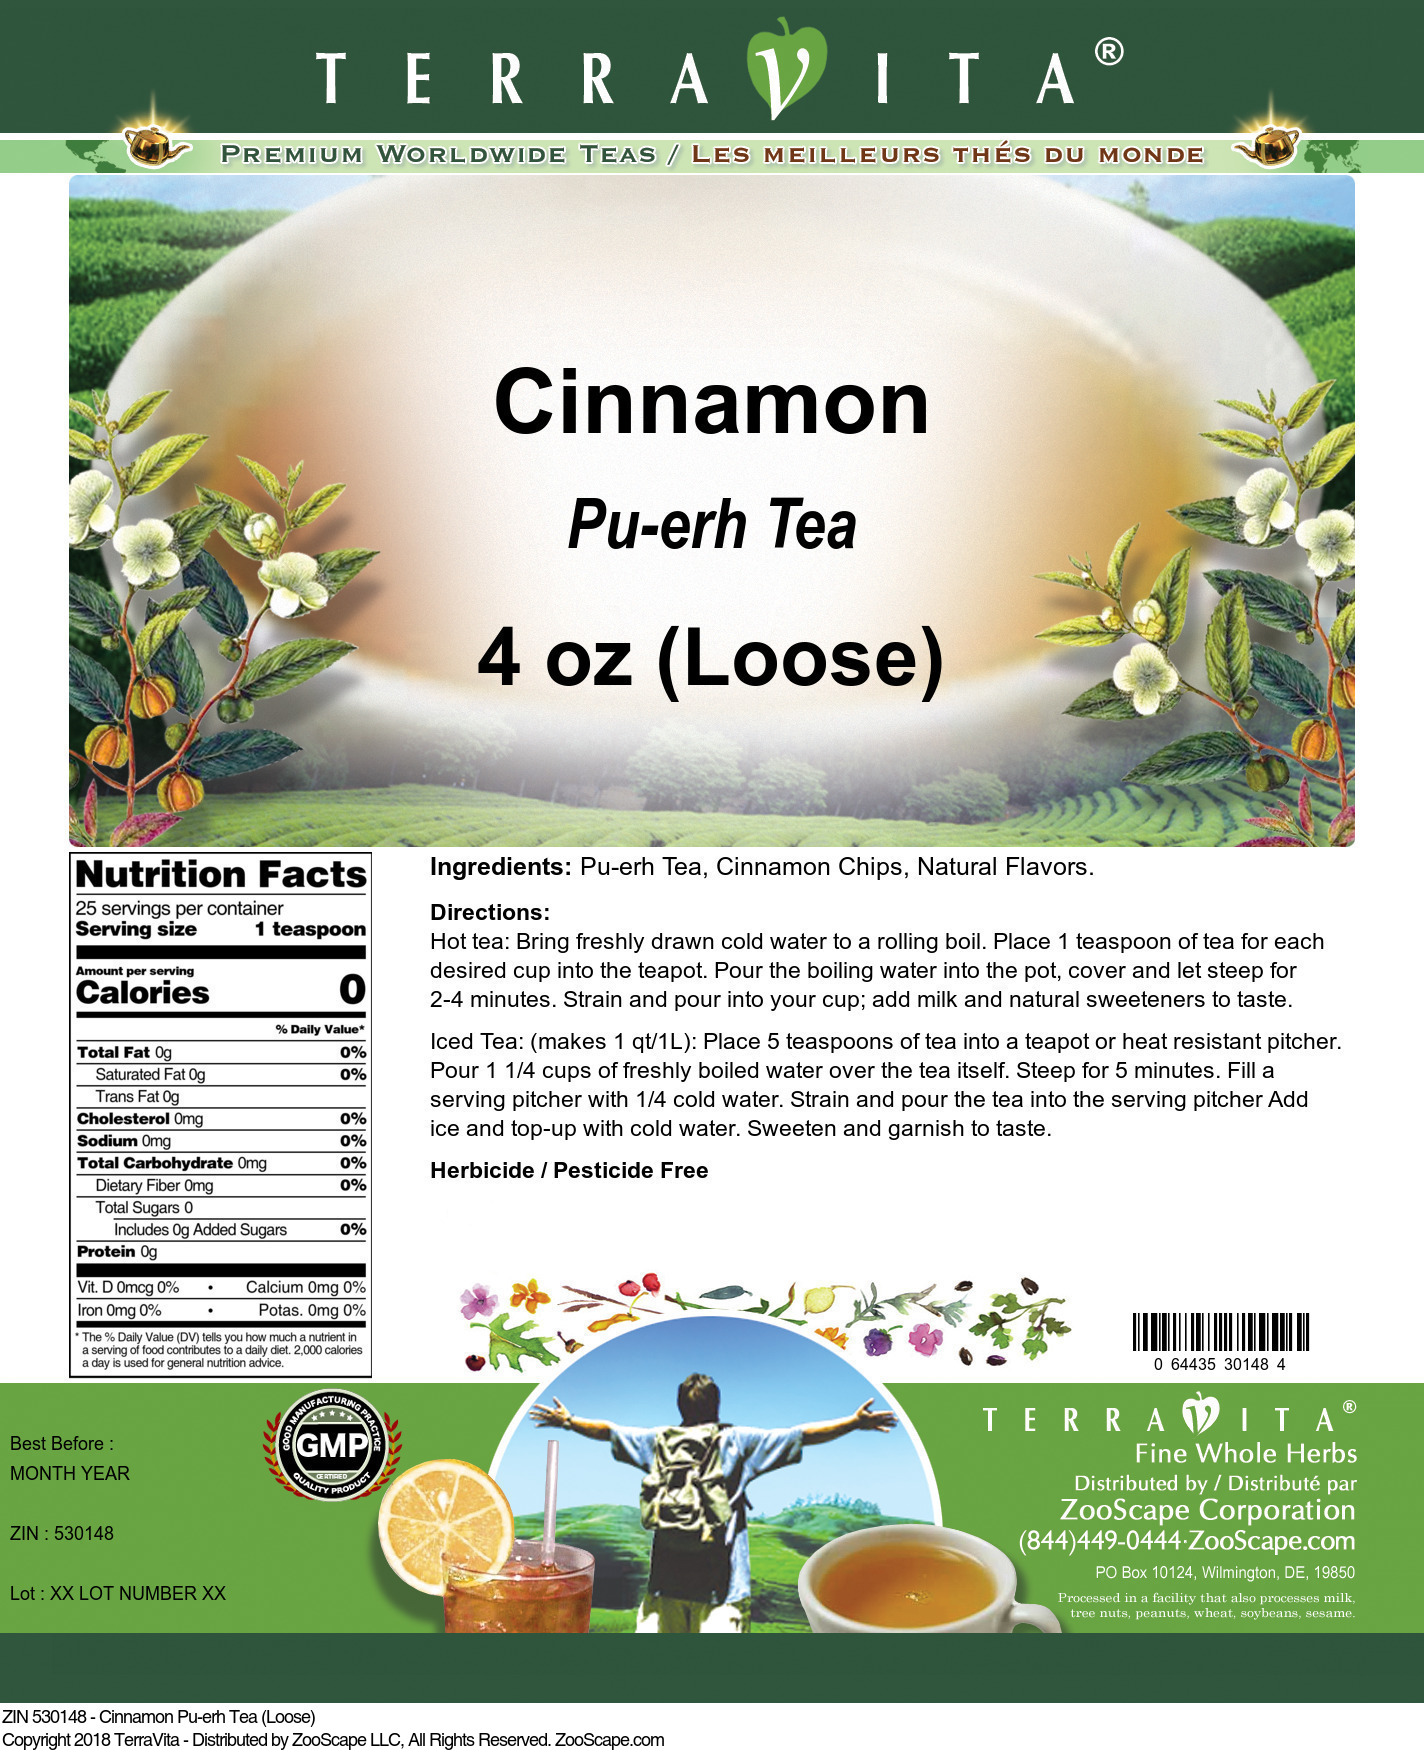 Cinnamon Pu-erh Tea (Loose) - Label